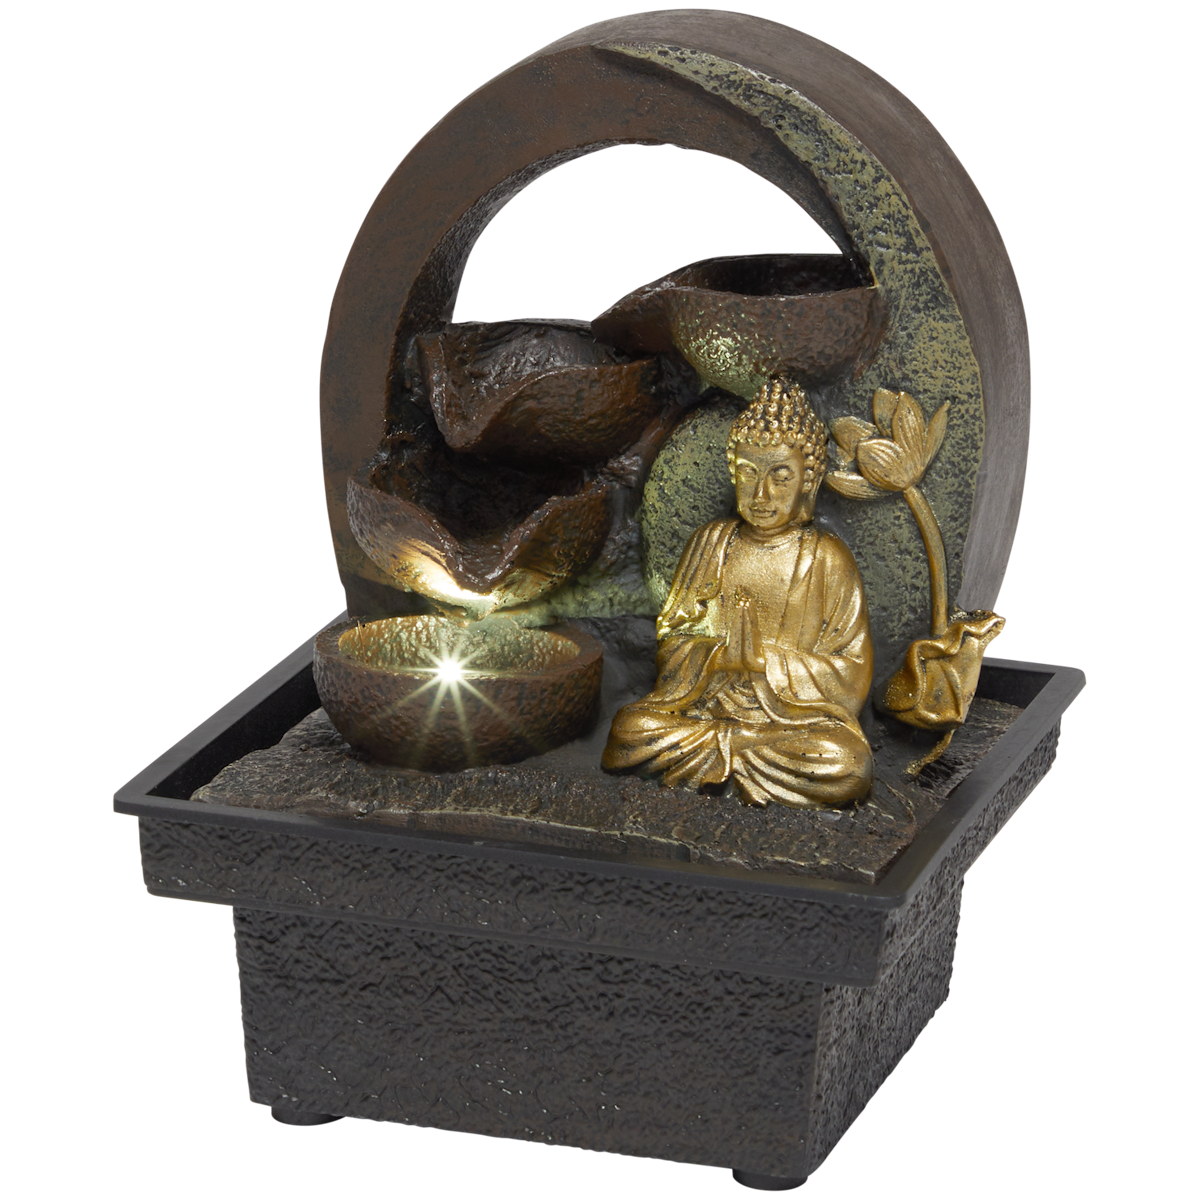 Fontaine avec Bouddha Deluxa